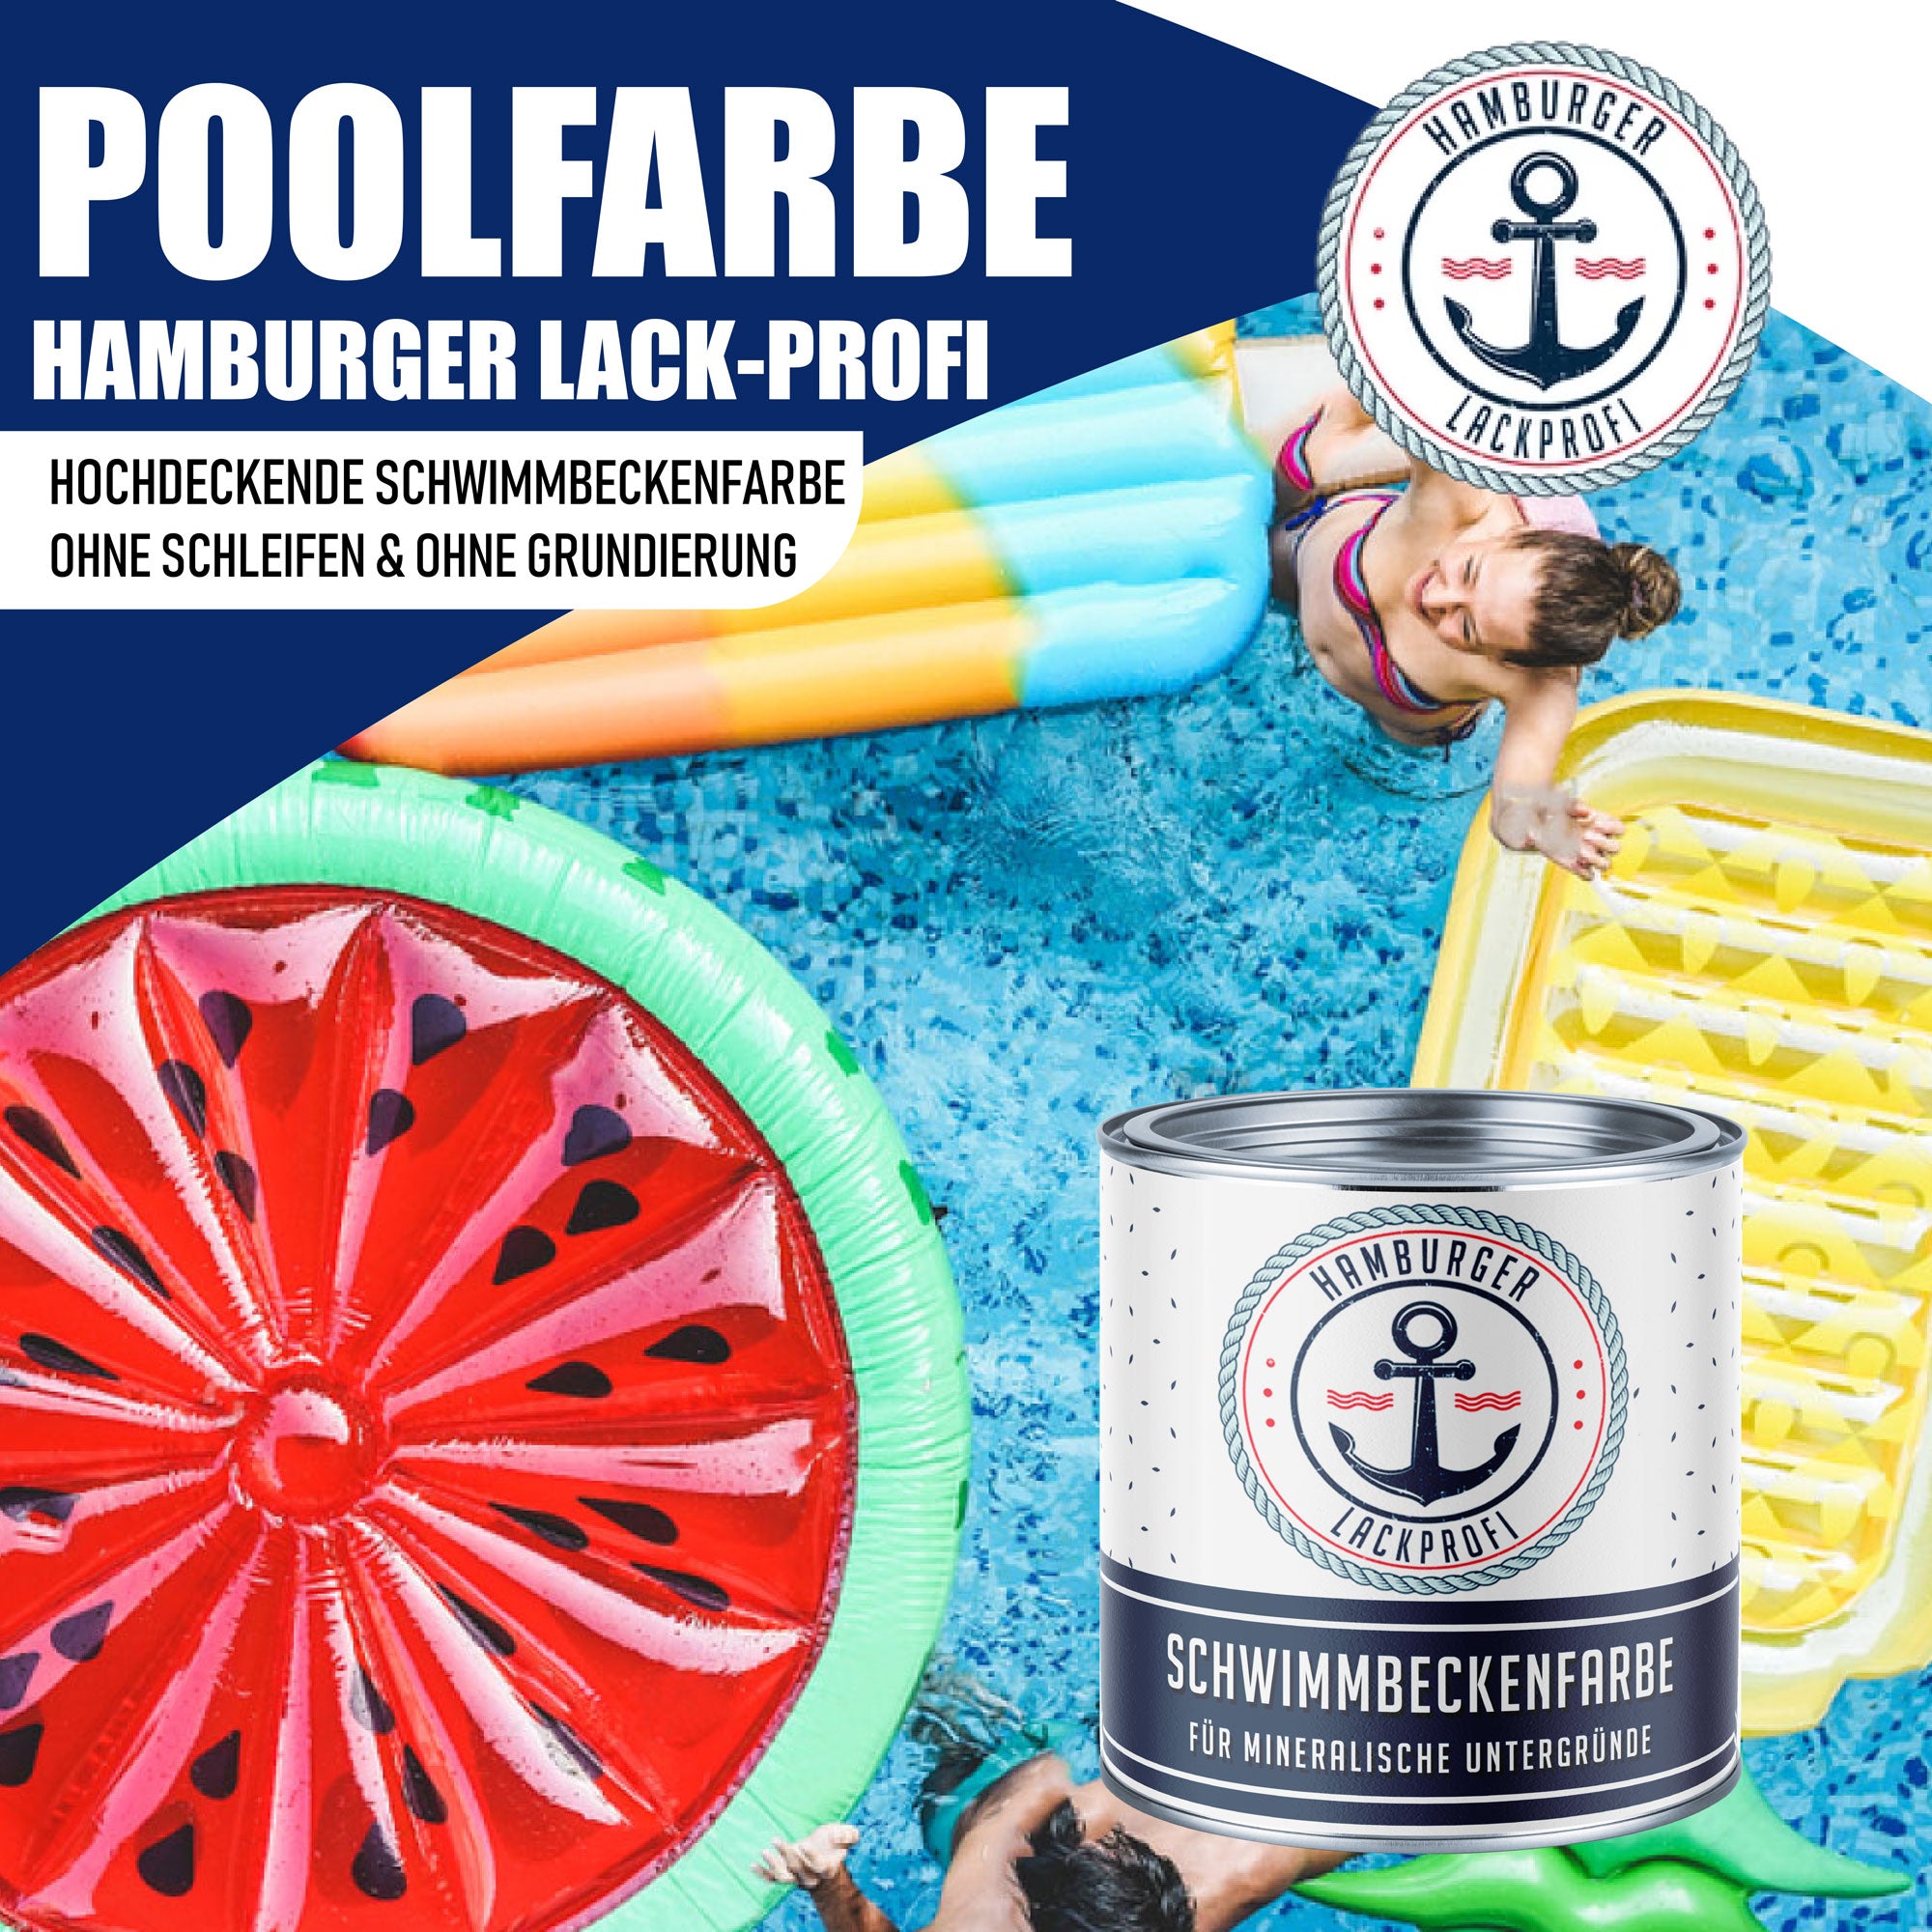 Hamburger Lack-Profi Schwimmbeckenfarbe Purpurviolett RAL 4007 - hochdeckende Poolfarbe